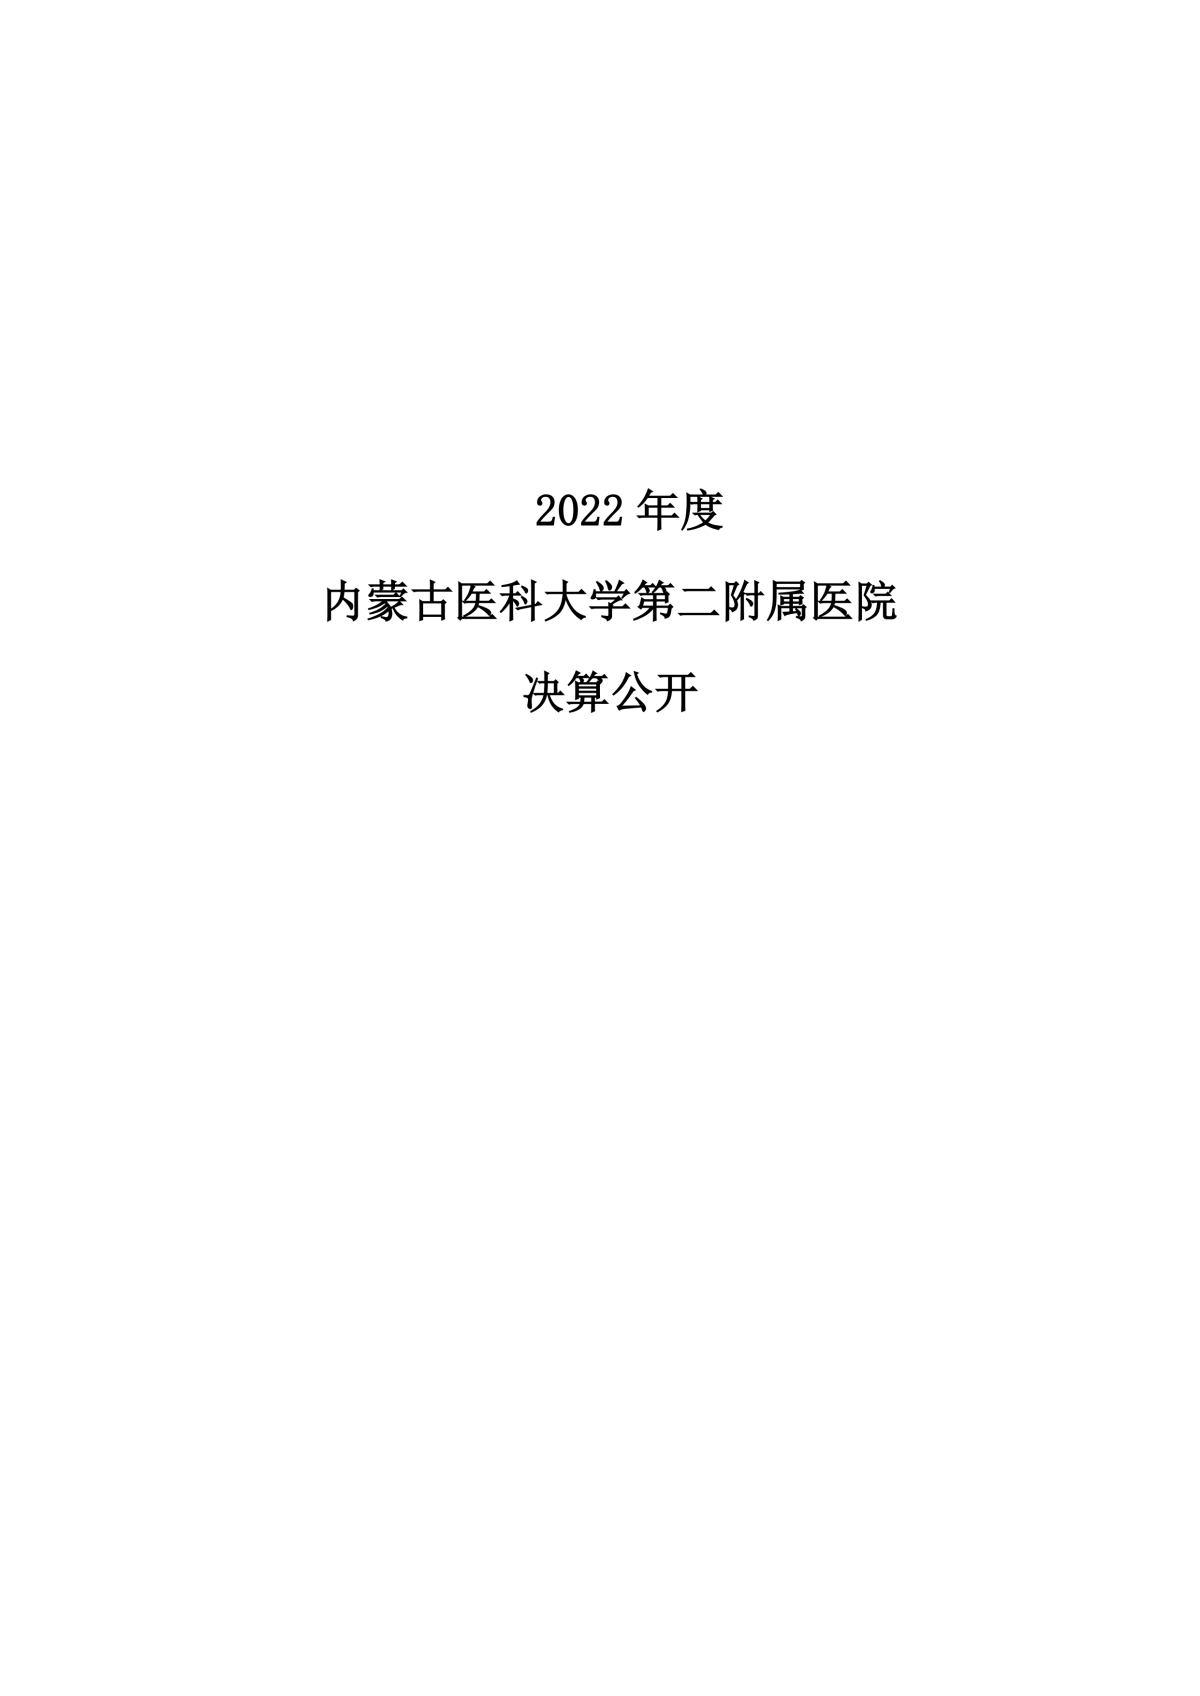 2022年度红宝石hbs9988公开报告_00.png